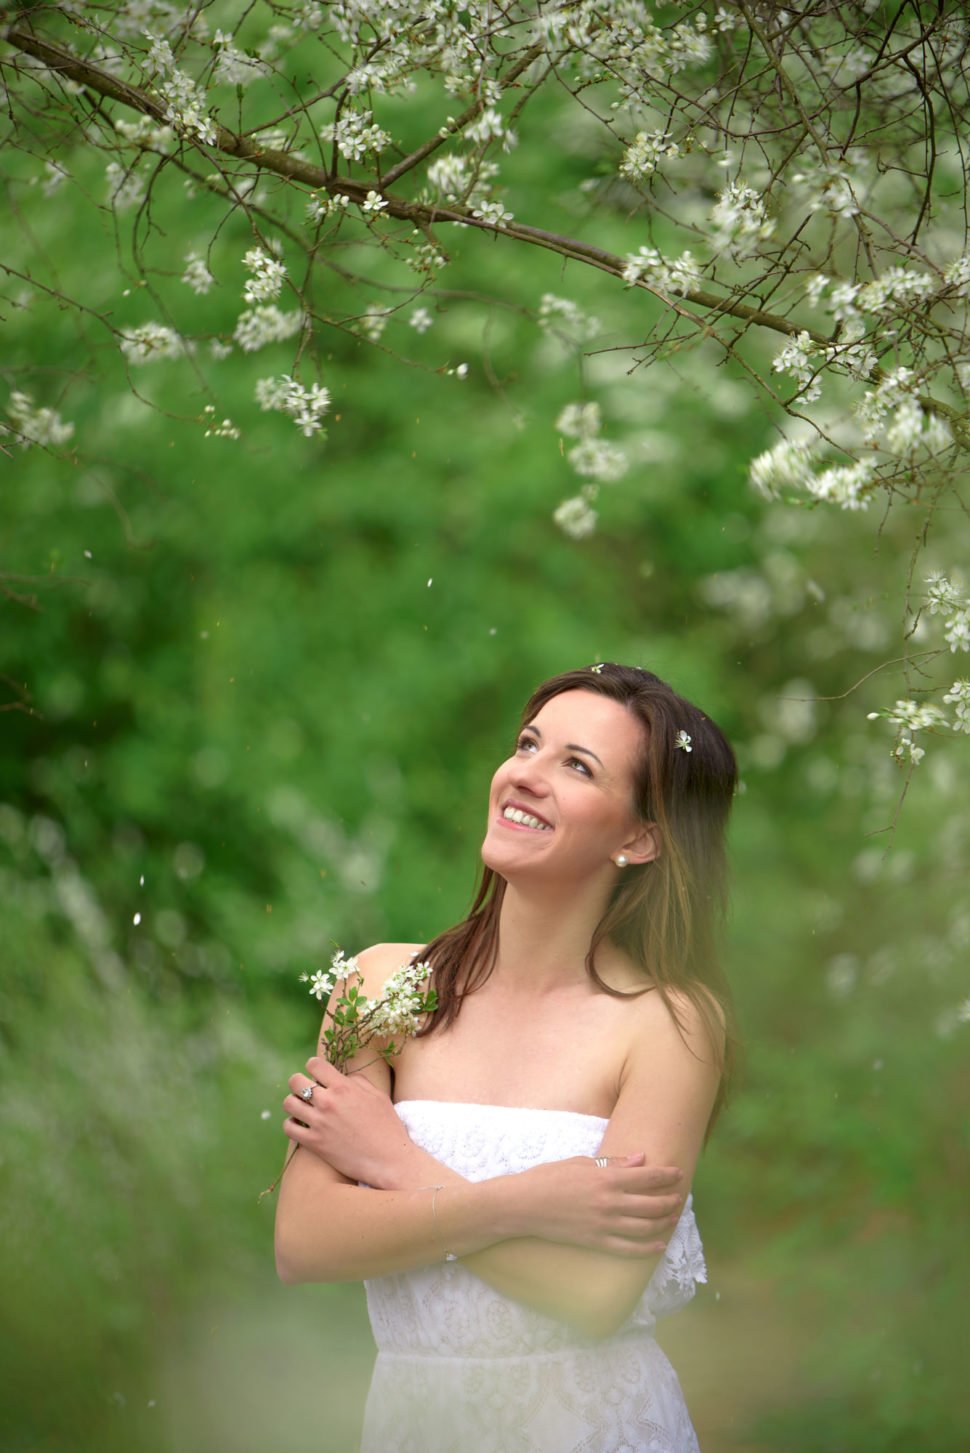 Aneta Štěpánková mezi kvetoucími stromy držící větvičky s květy